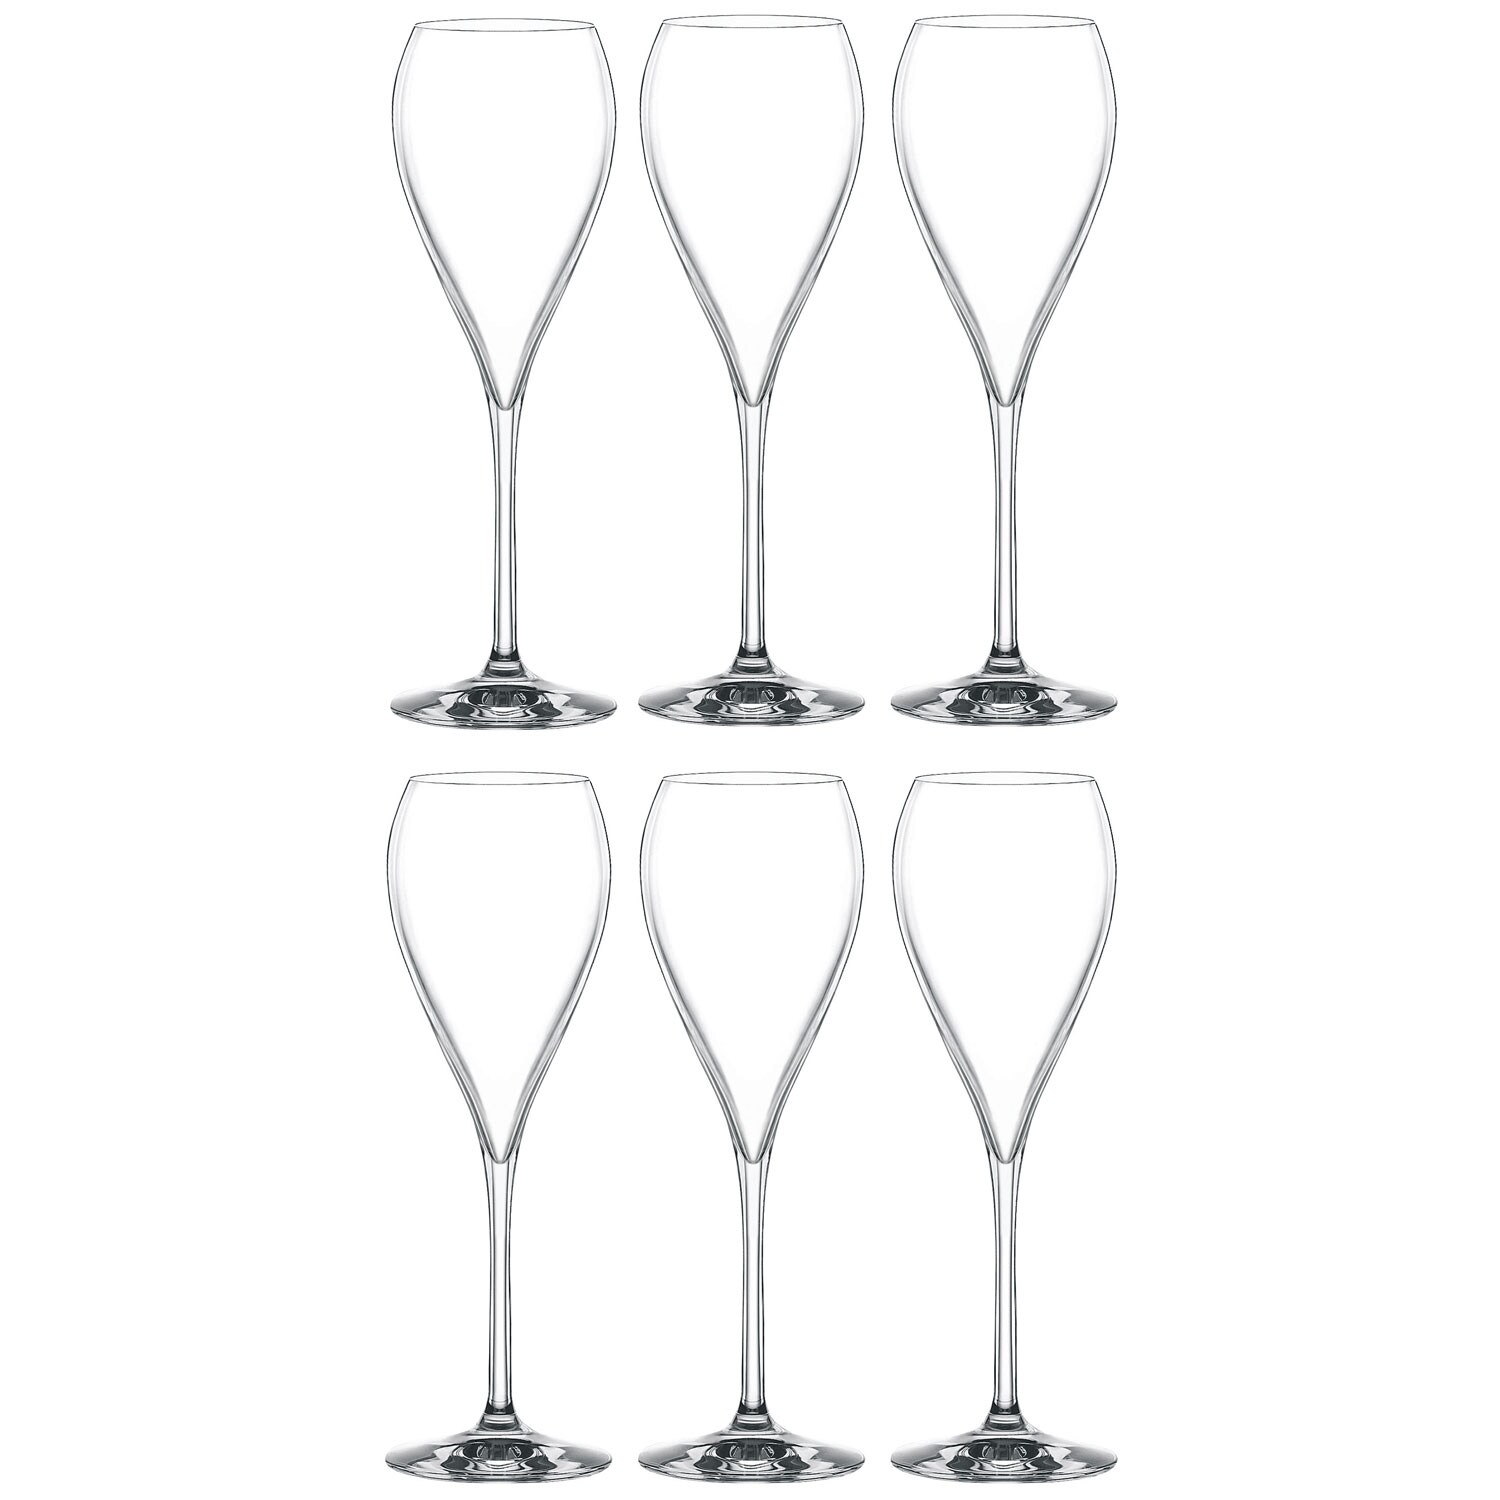 https://royaldesign.com/image/2/spiegelau-party-champagne-glass-16-cl-6-pcs-0